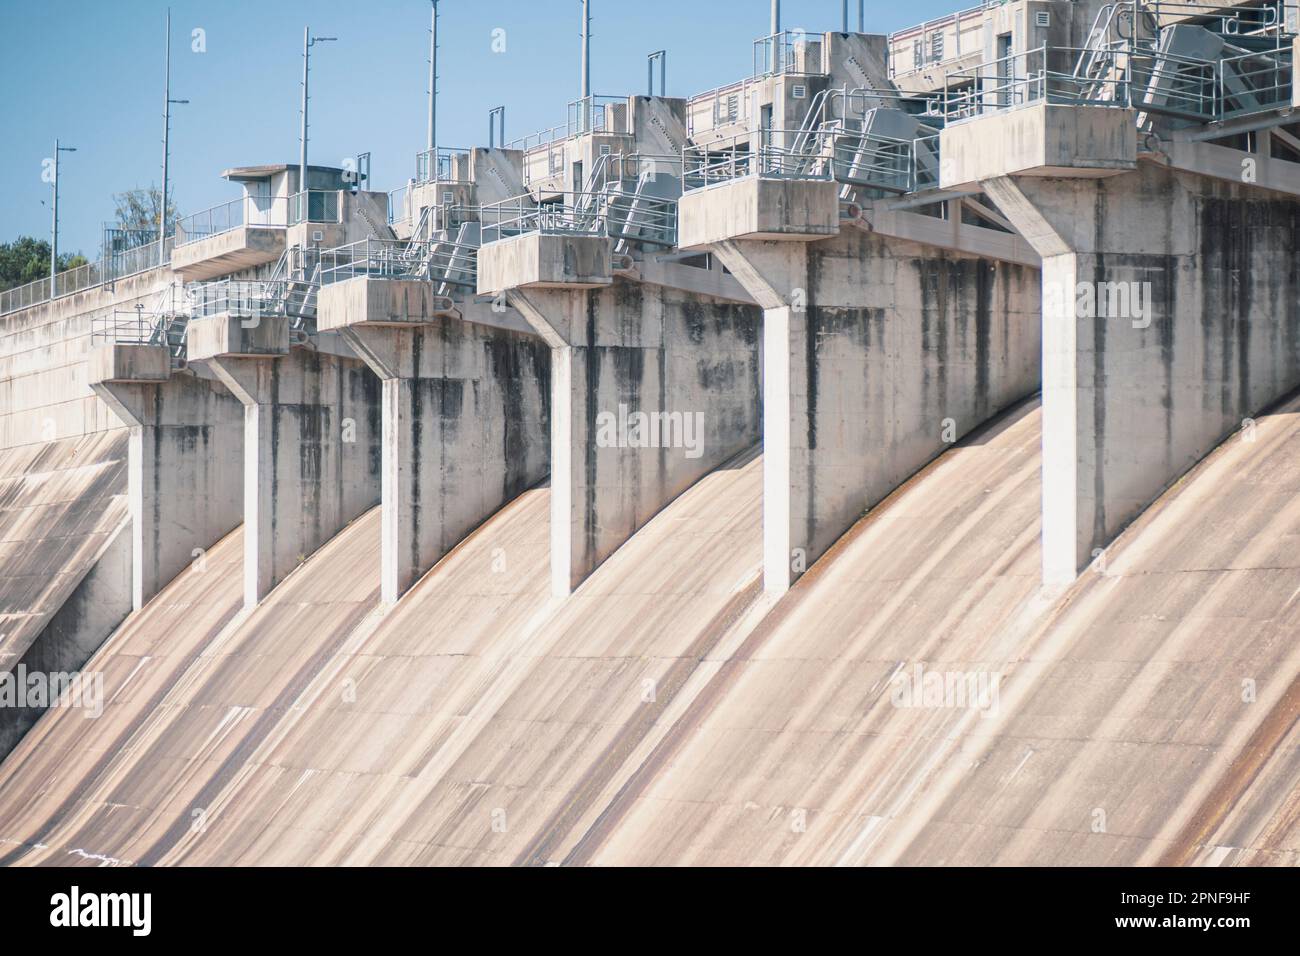 Australie, Queensland, Warwick, vue du barrage hydroélectrique en béton Banque D'Images